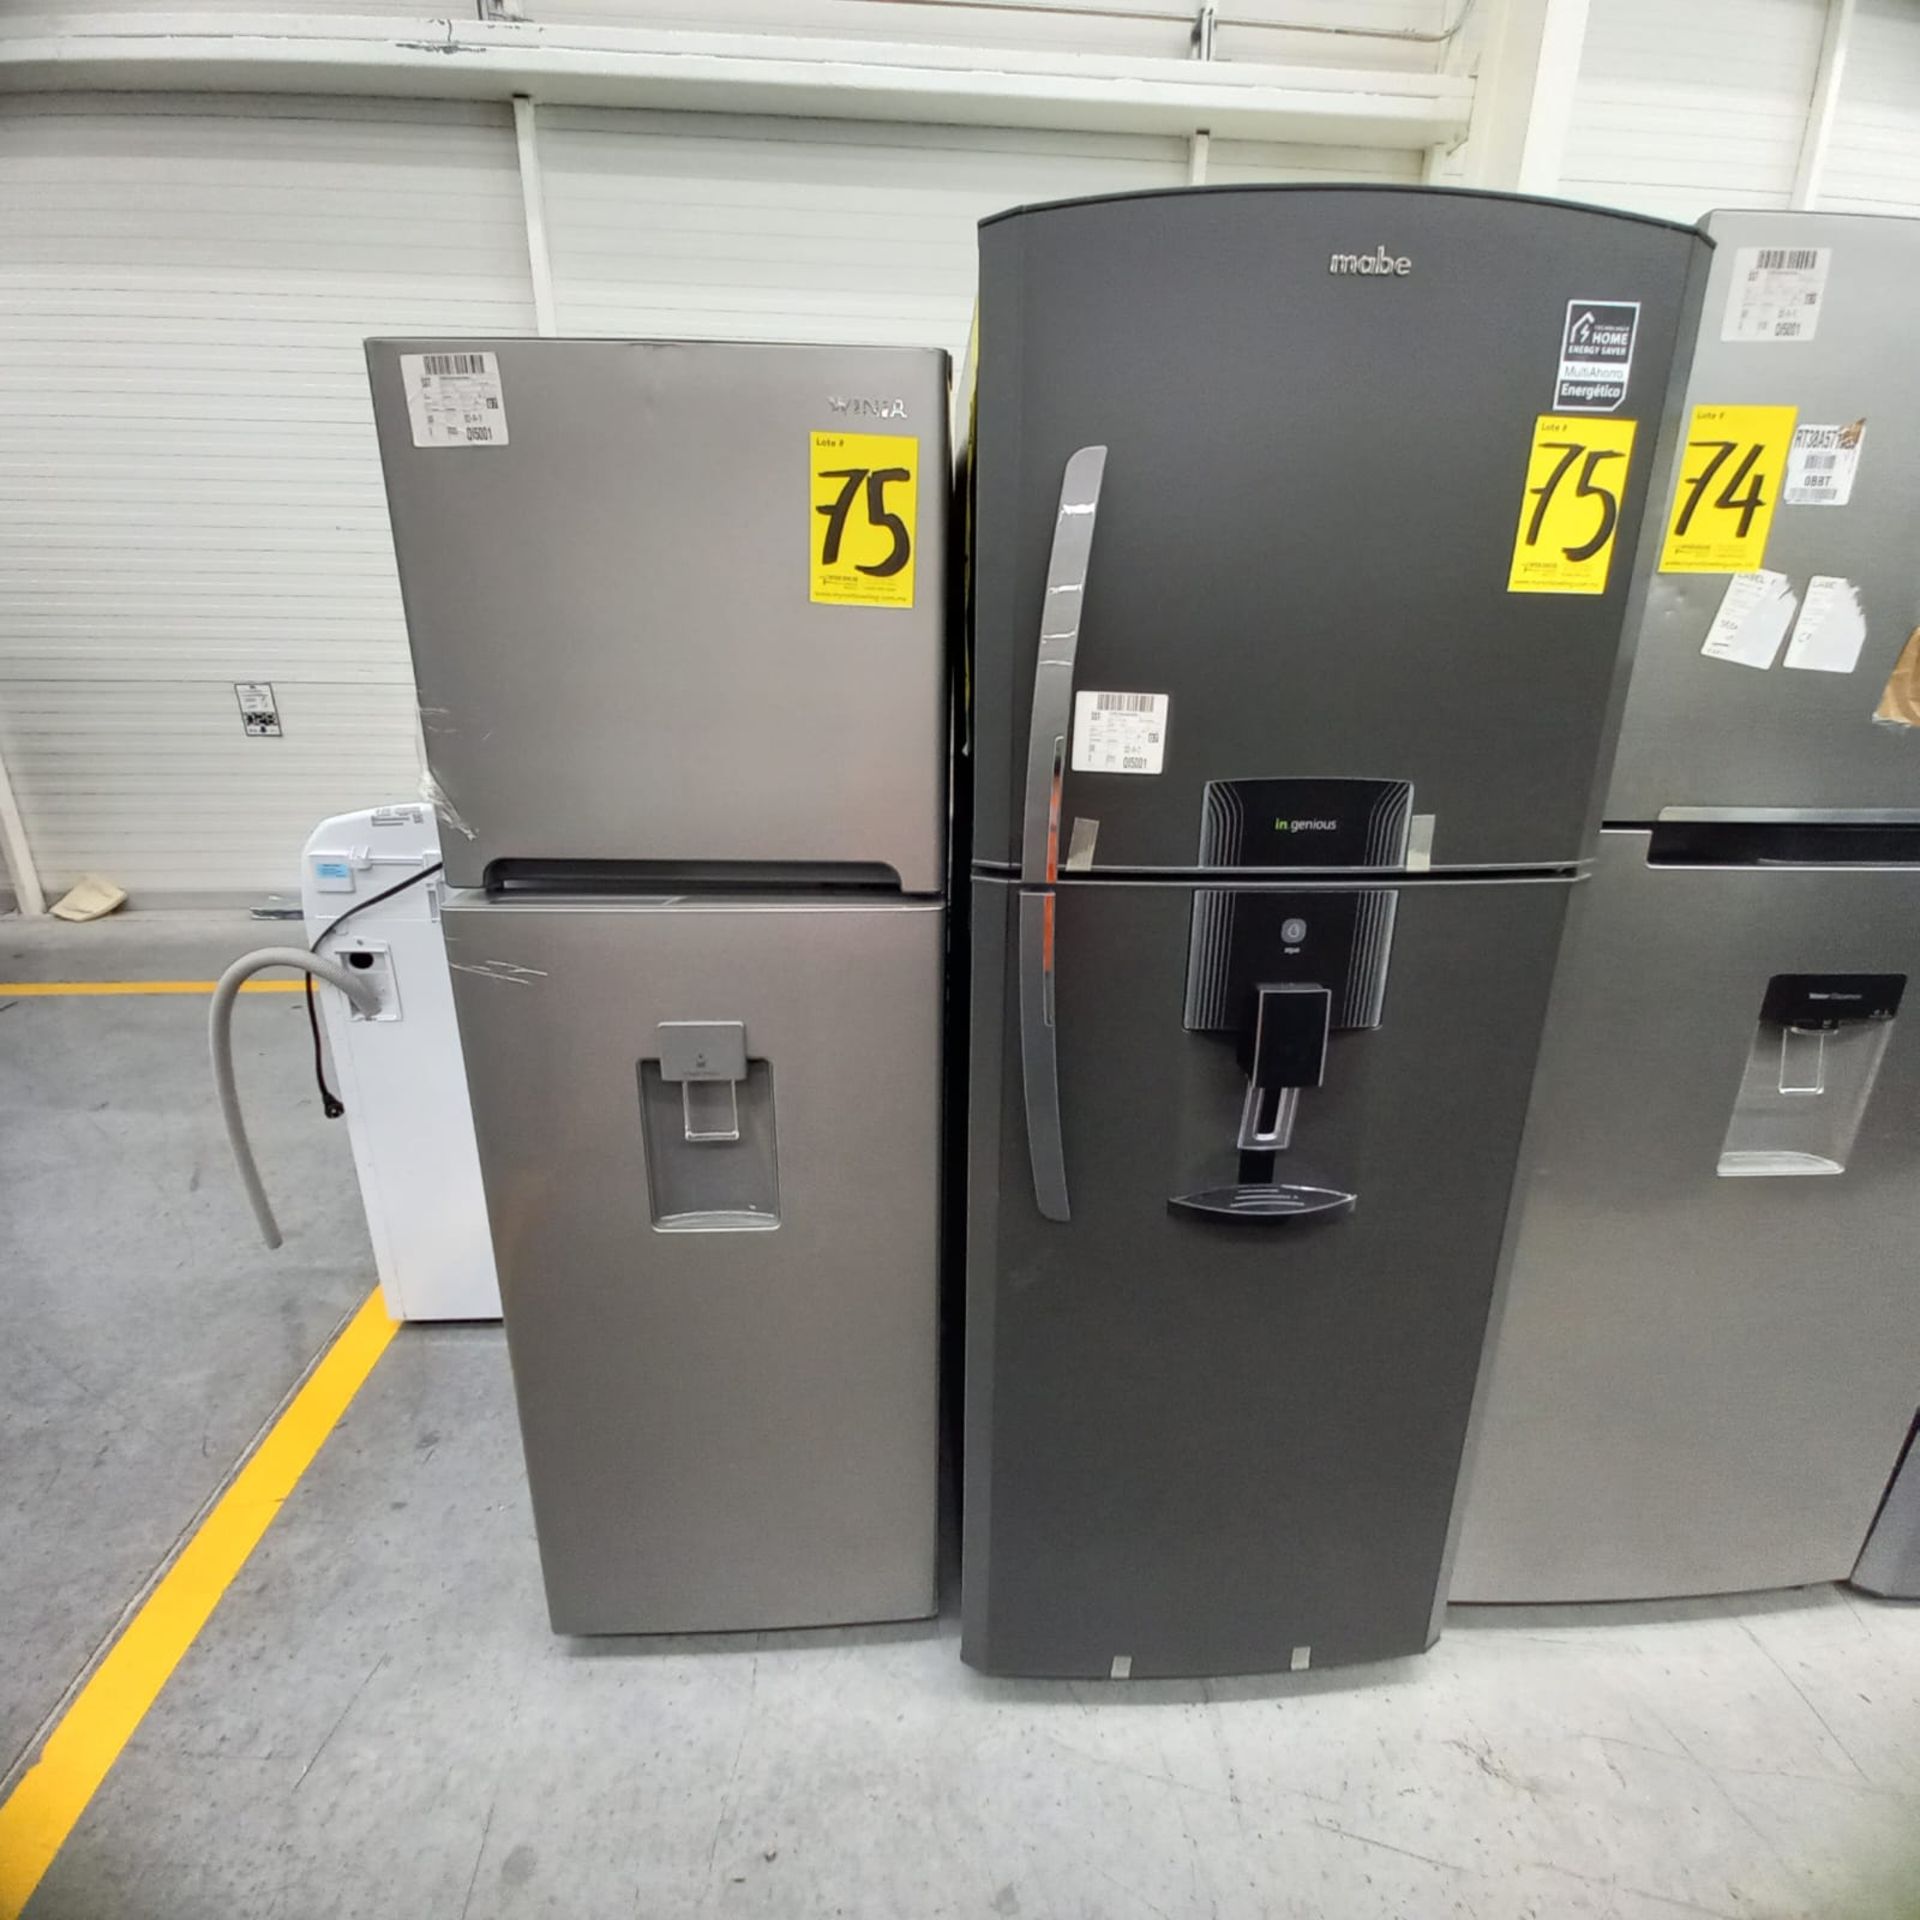 Lote De 2 Refrigeradores: 1 Refrigerador Marca Mabe, 1 Refrigerador Marca Winia, Distintos Modelos - Image 7 of 23